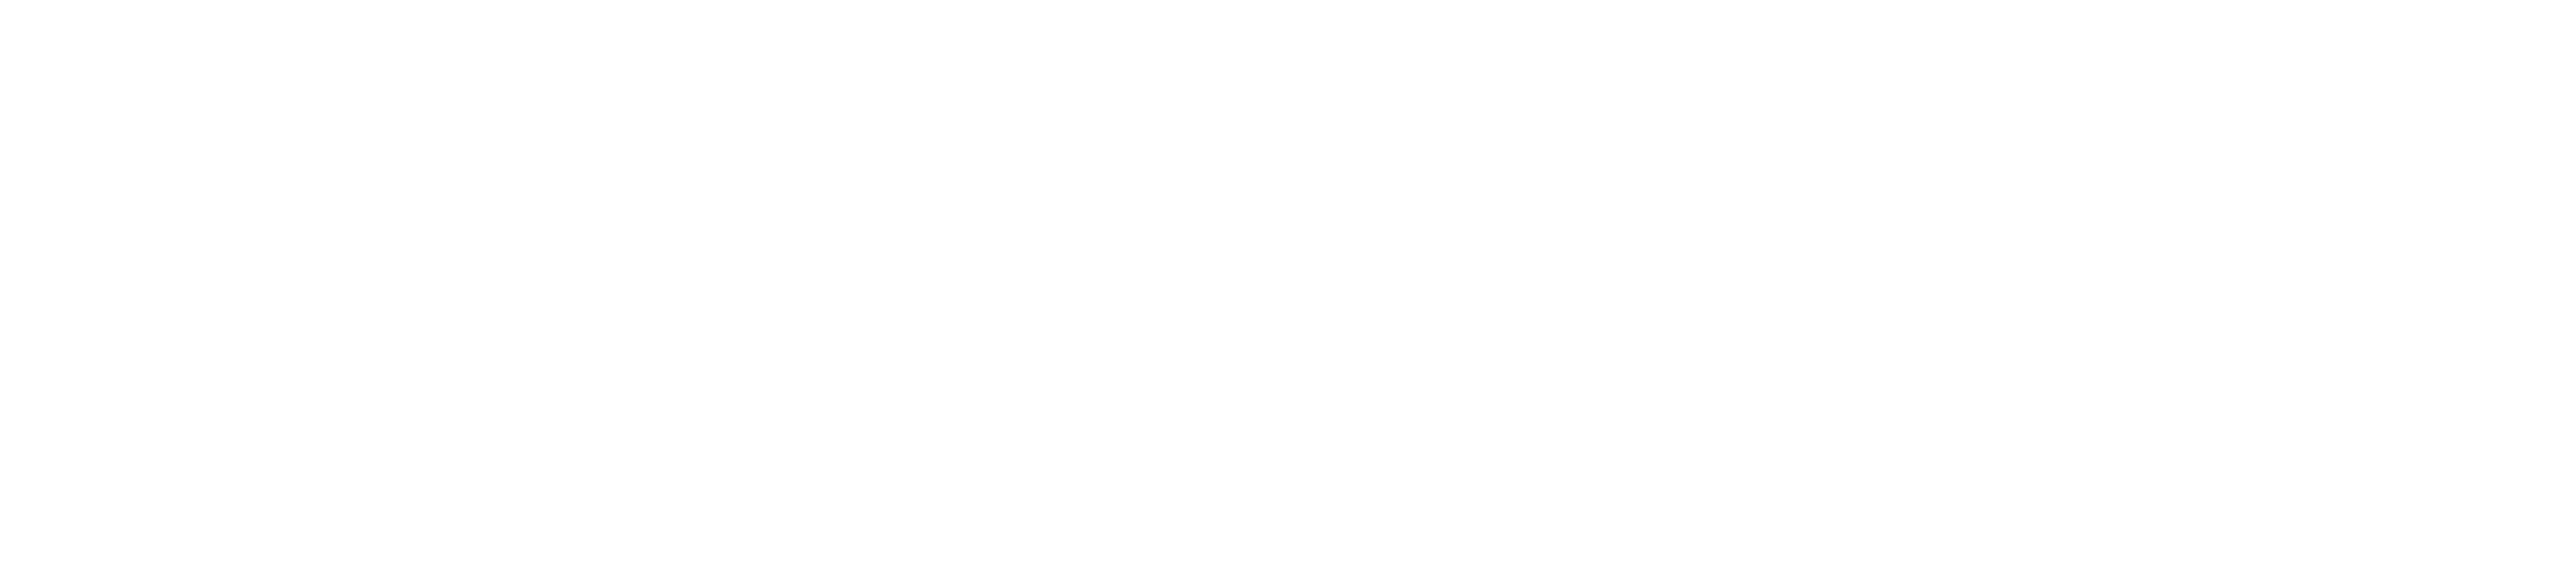 CU NextGen